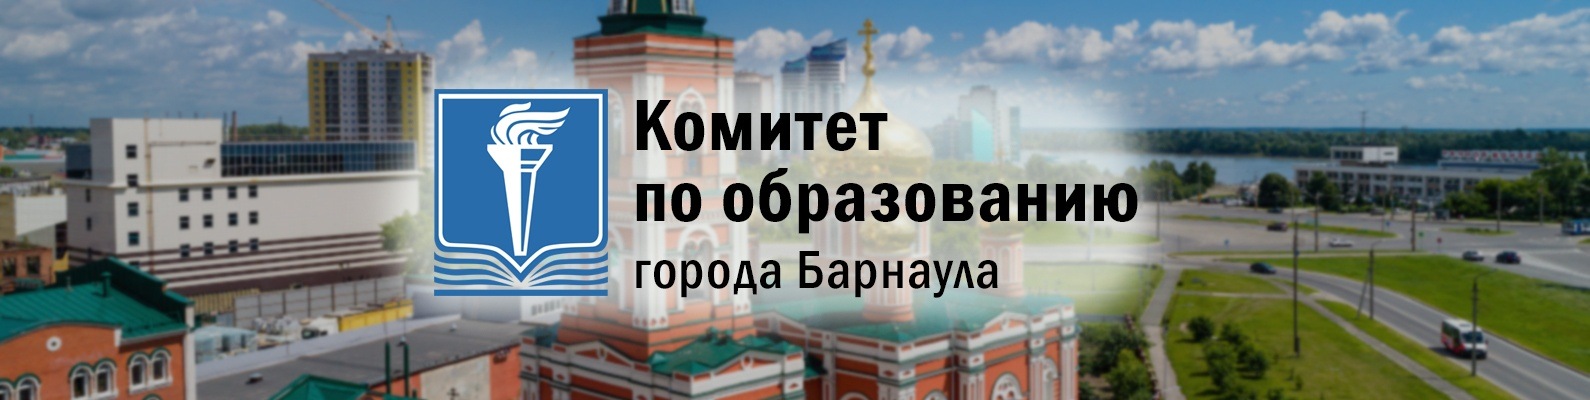 Выездной прием специалистов комитета по образованию города Барнаула.